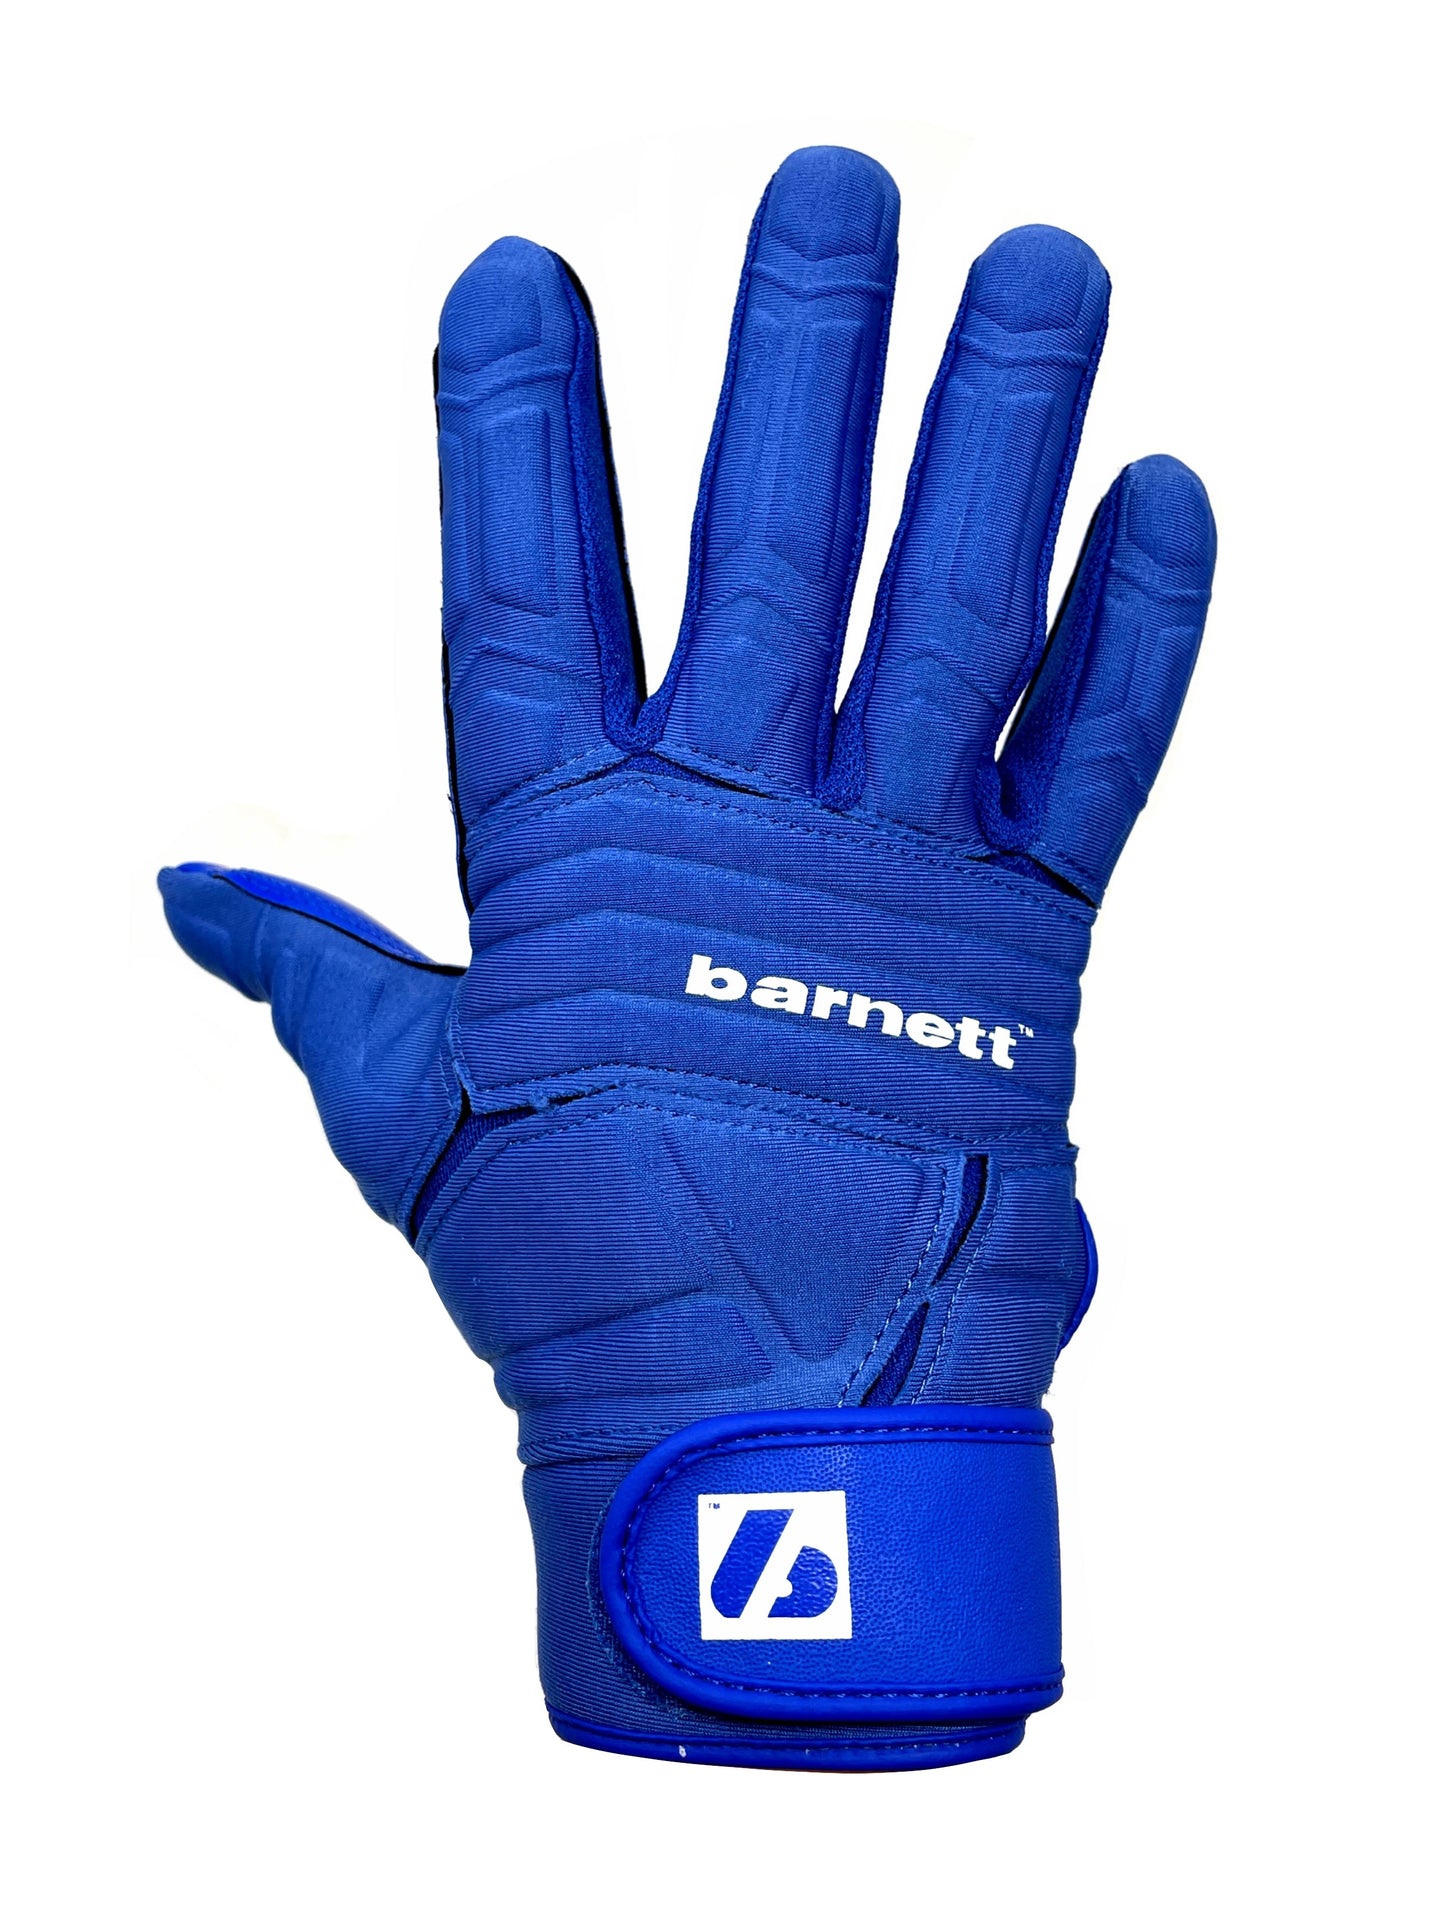 FLG-03 profesionální rukavice na americký fotbal, OL,DL, modré